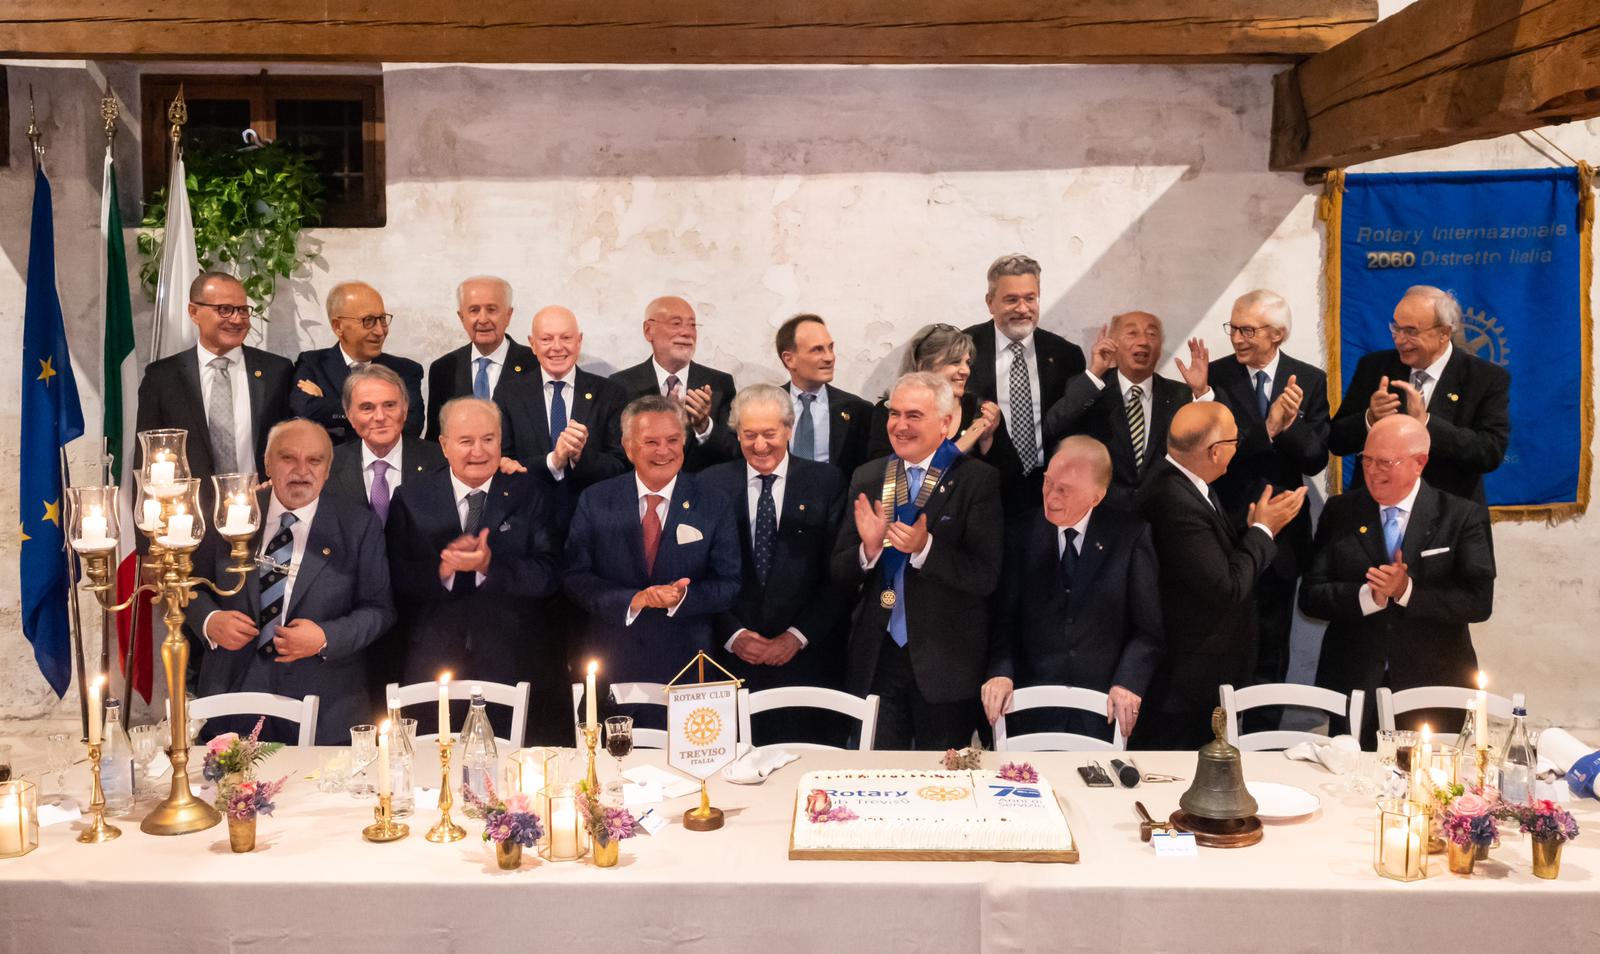 Presidenti del Rotary Club Treviso in occasione del 70° anniversario del Club.